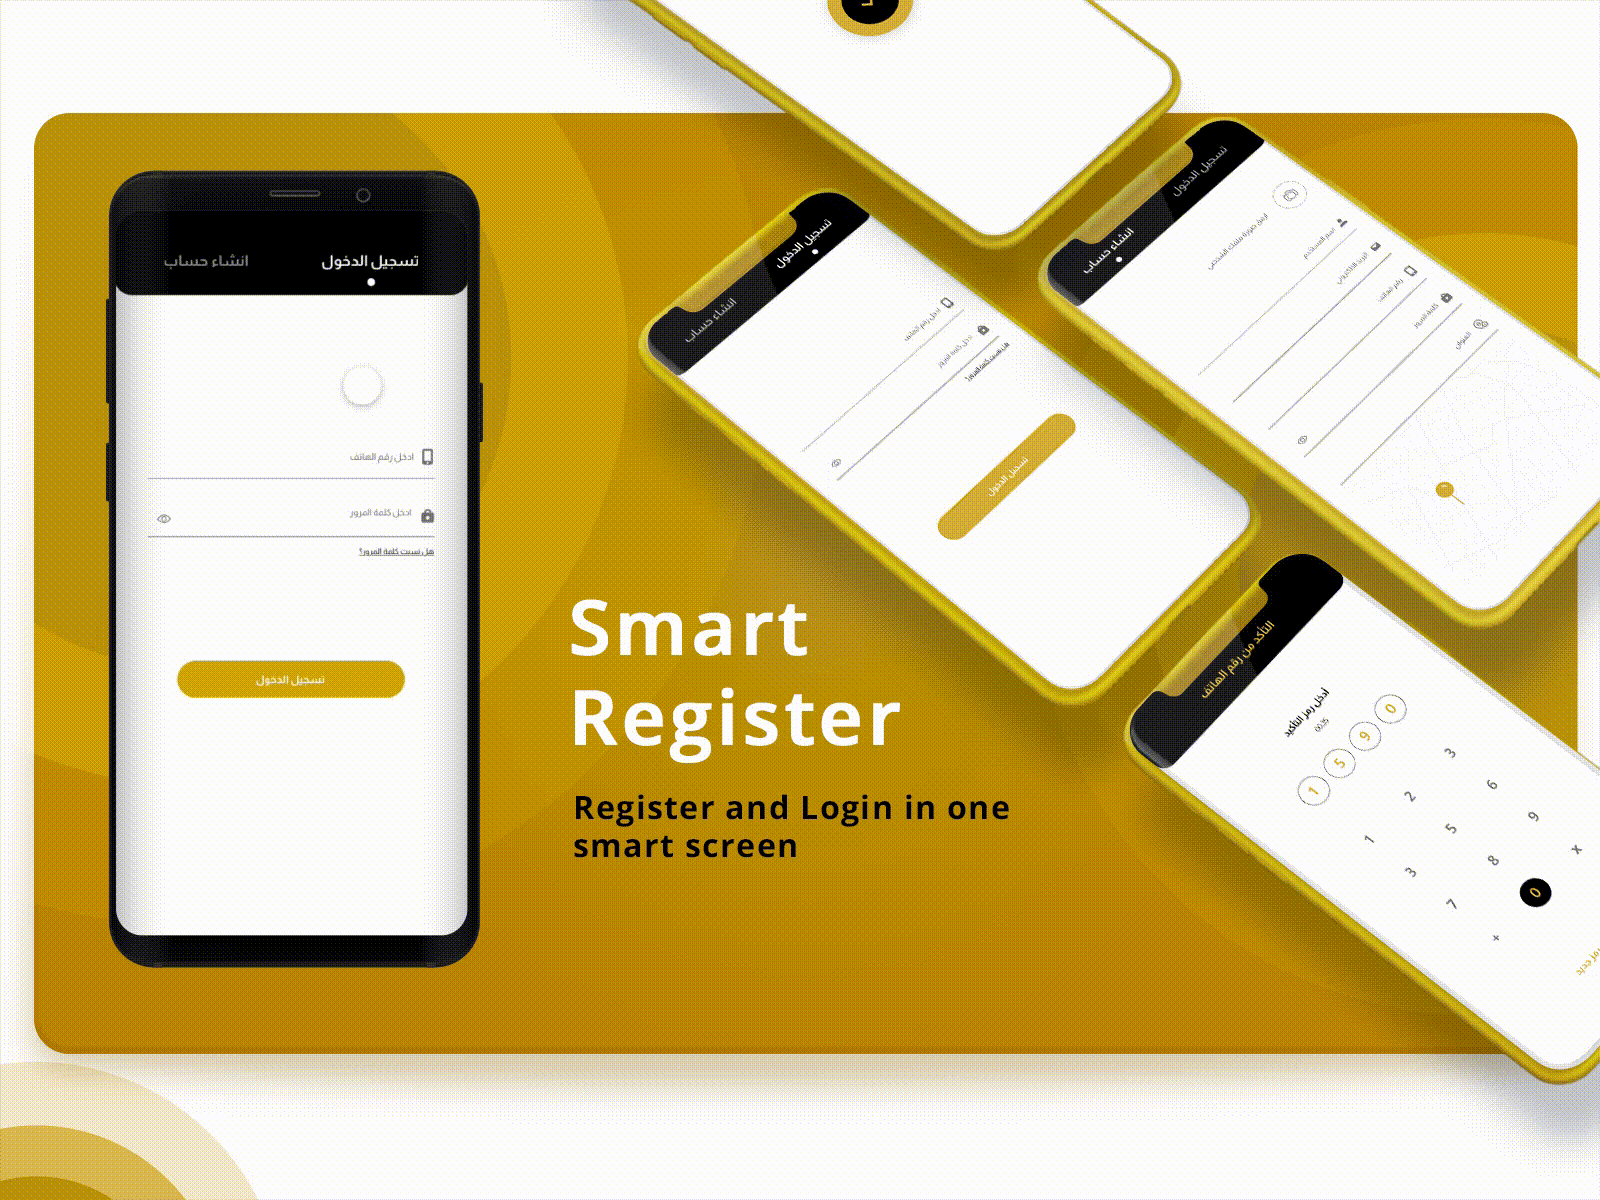 Smart Register